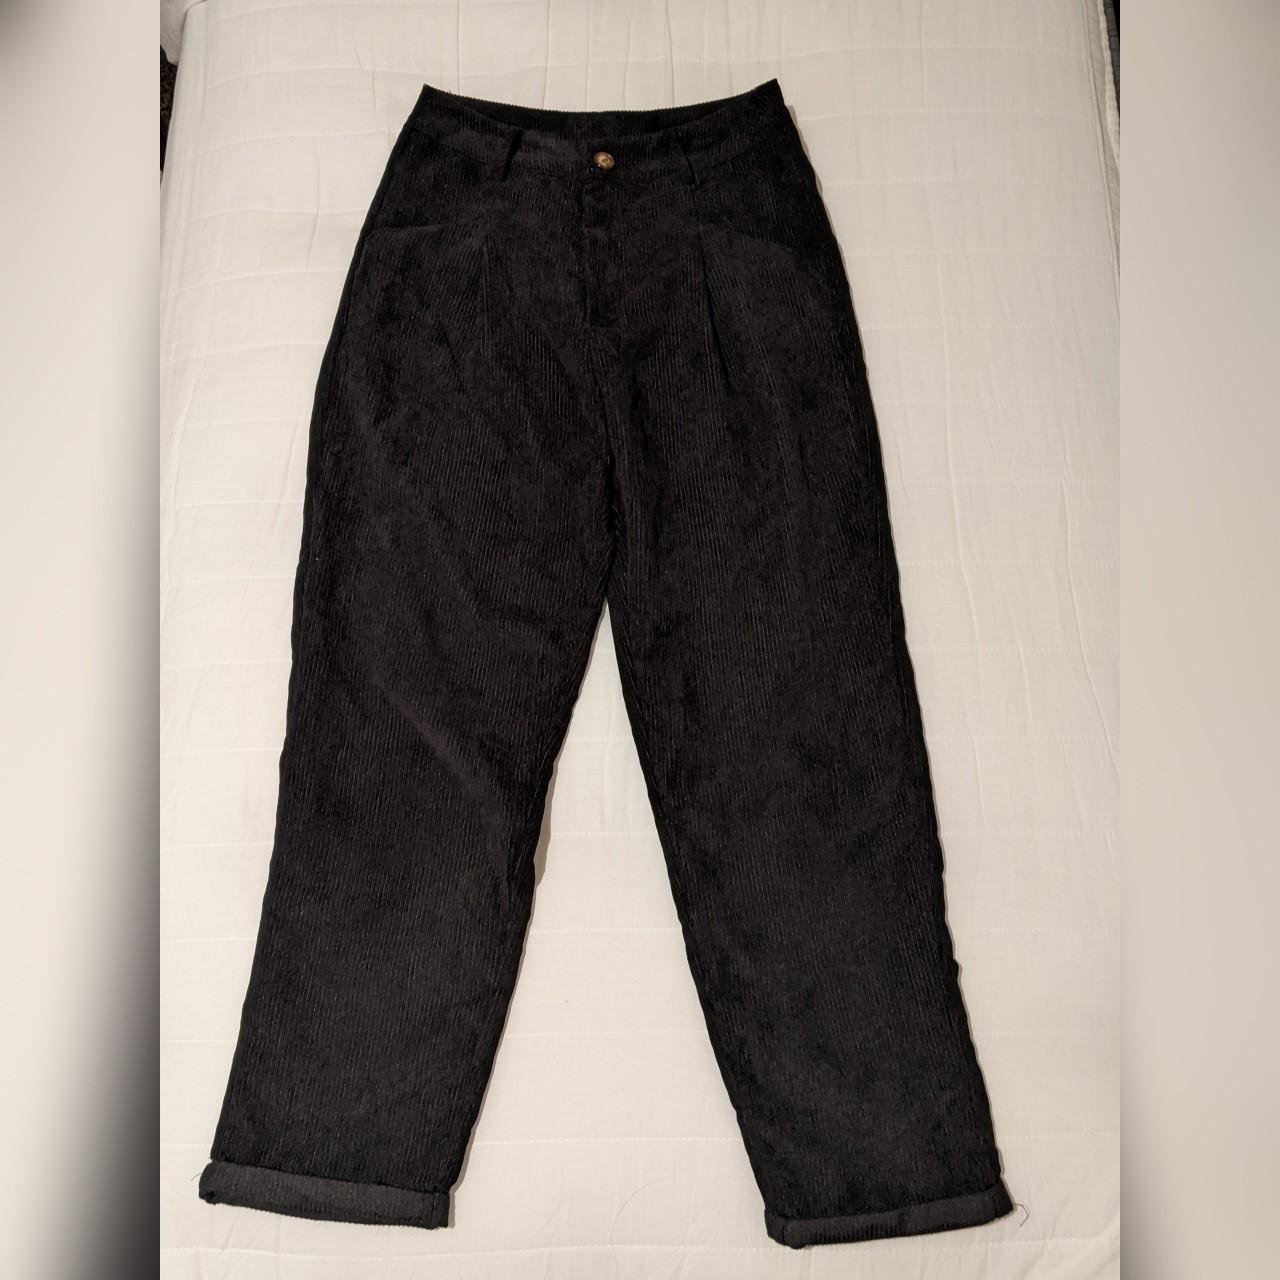 ʚ black corduroy pants ɞ SheIn black corduroy pants... - Depop